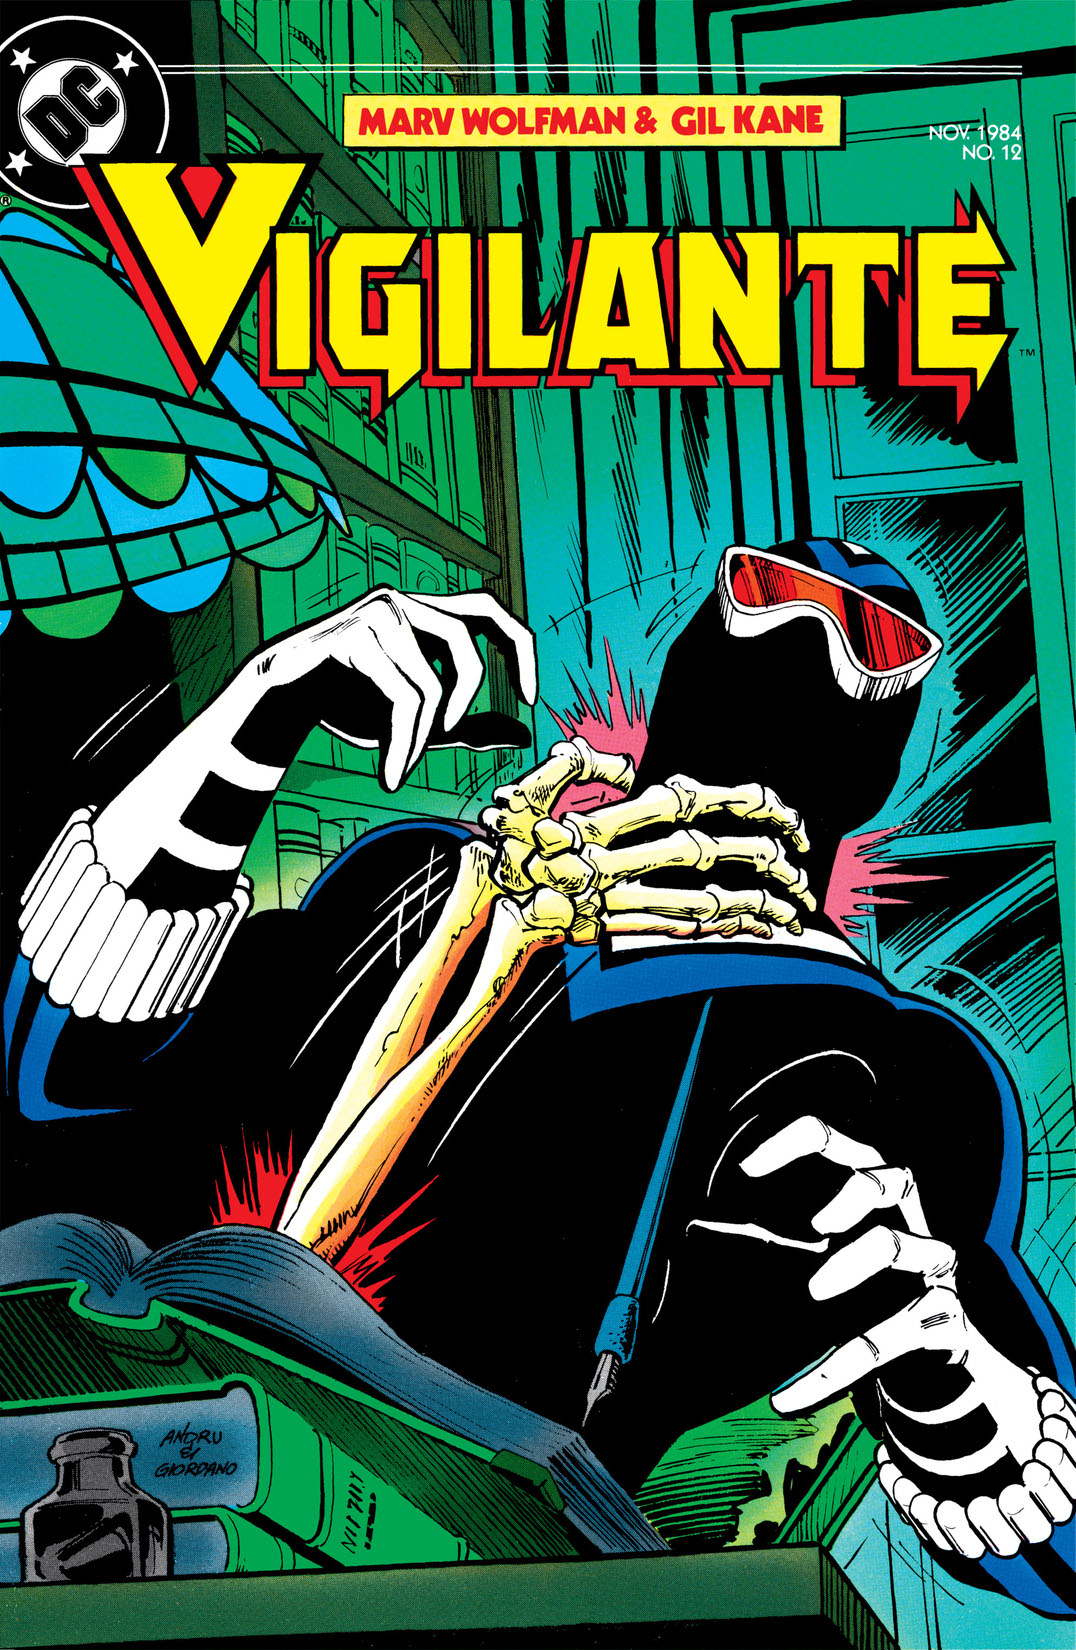 The Vigilante #12 preview images